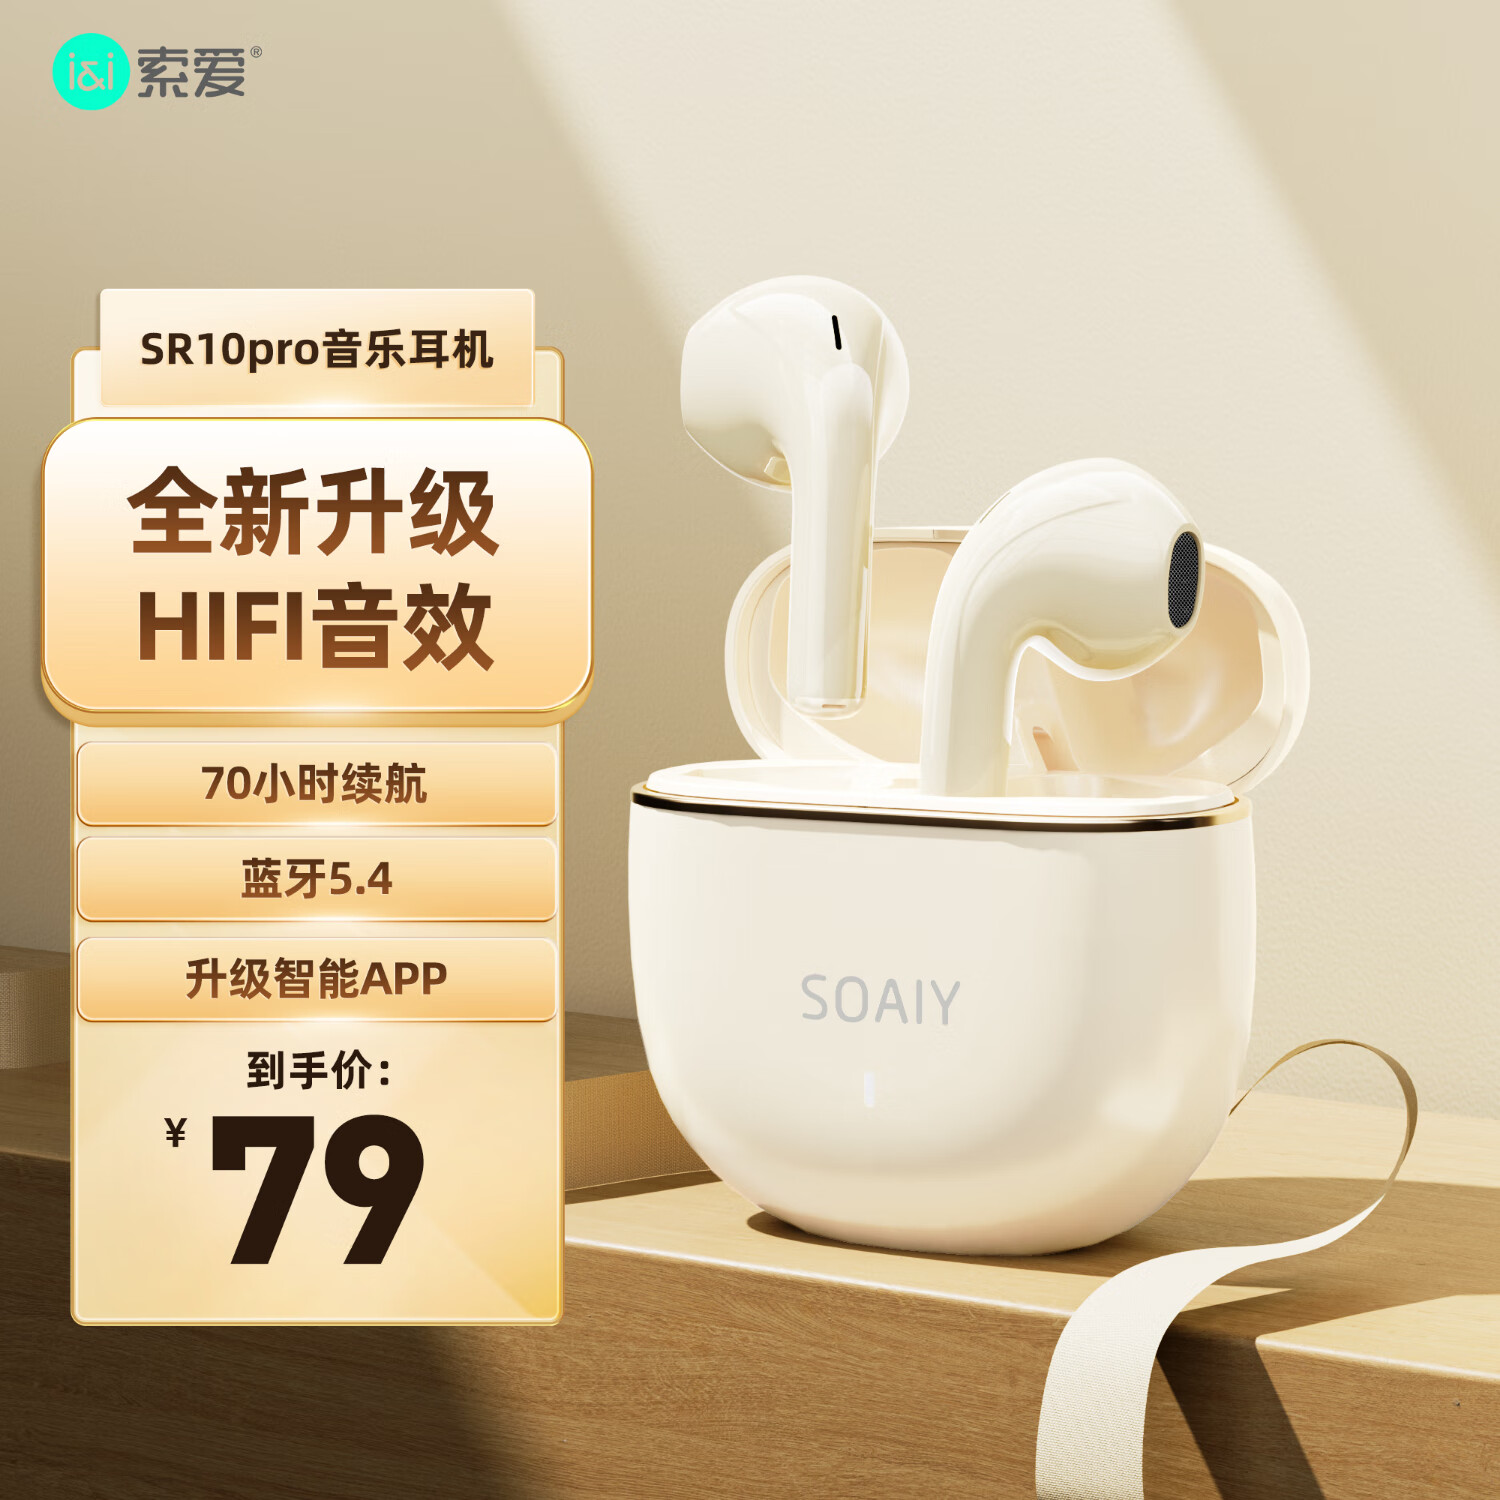 索爱（soaiy）SR10pro真无线蓝牙耳机 HIFI音效通话降噪游戏运动音乐半入耳式耳机 苹果安卓华为手机通用 油彩白